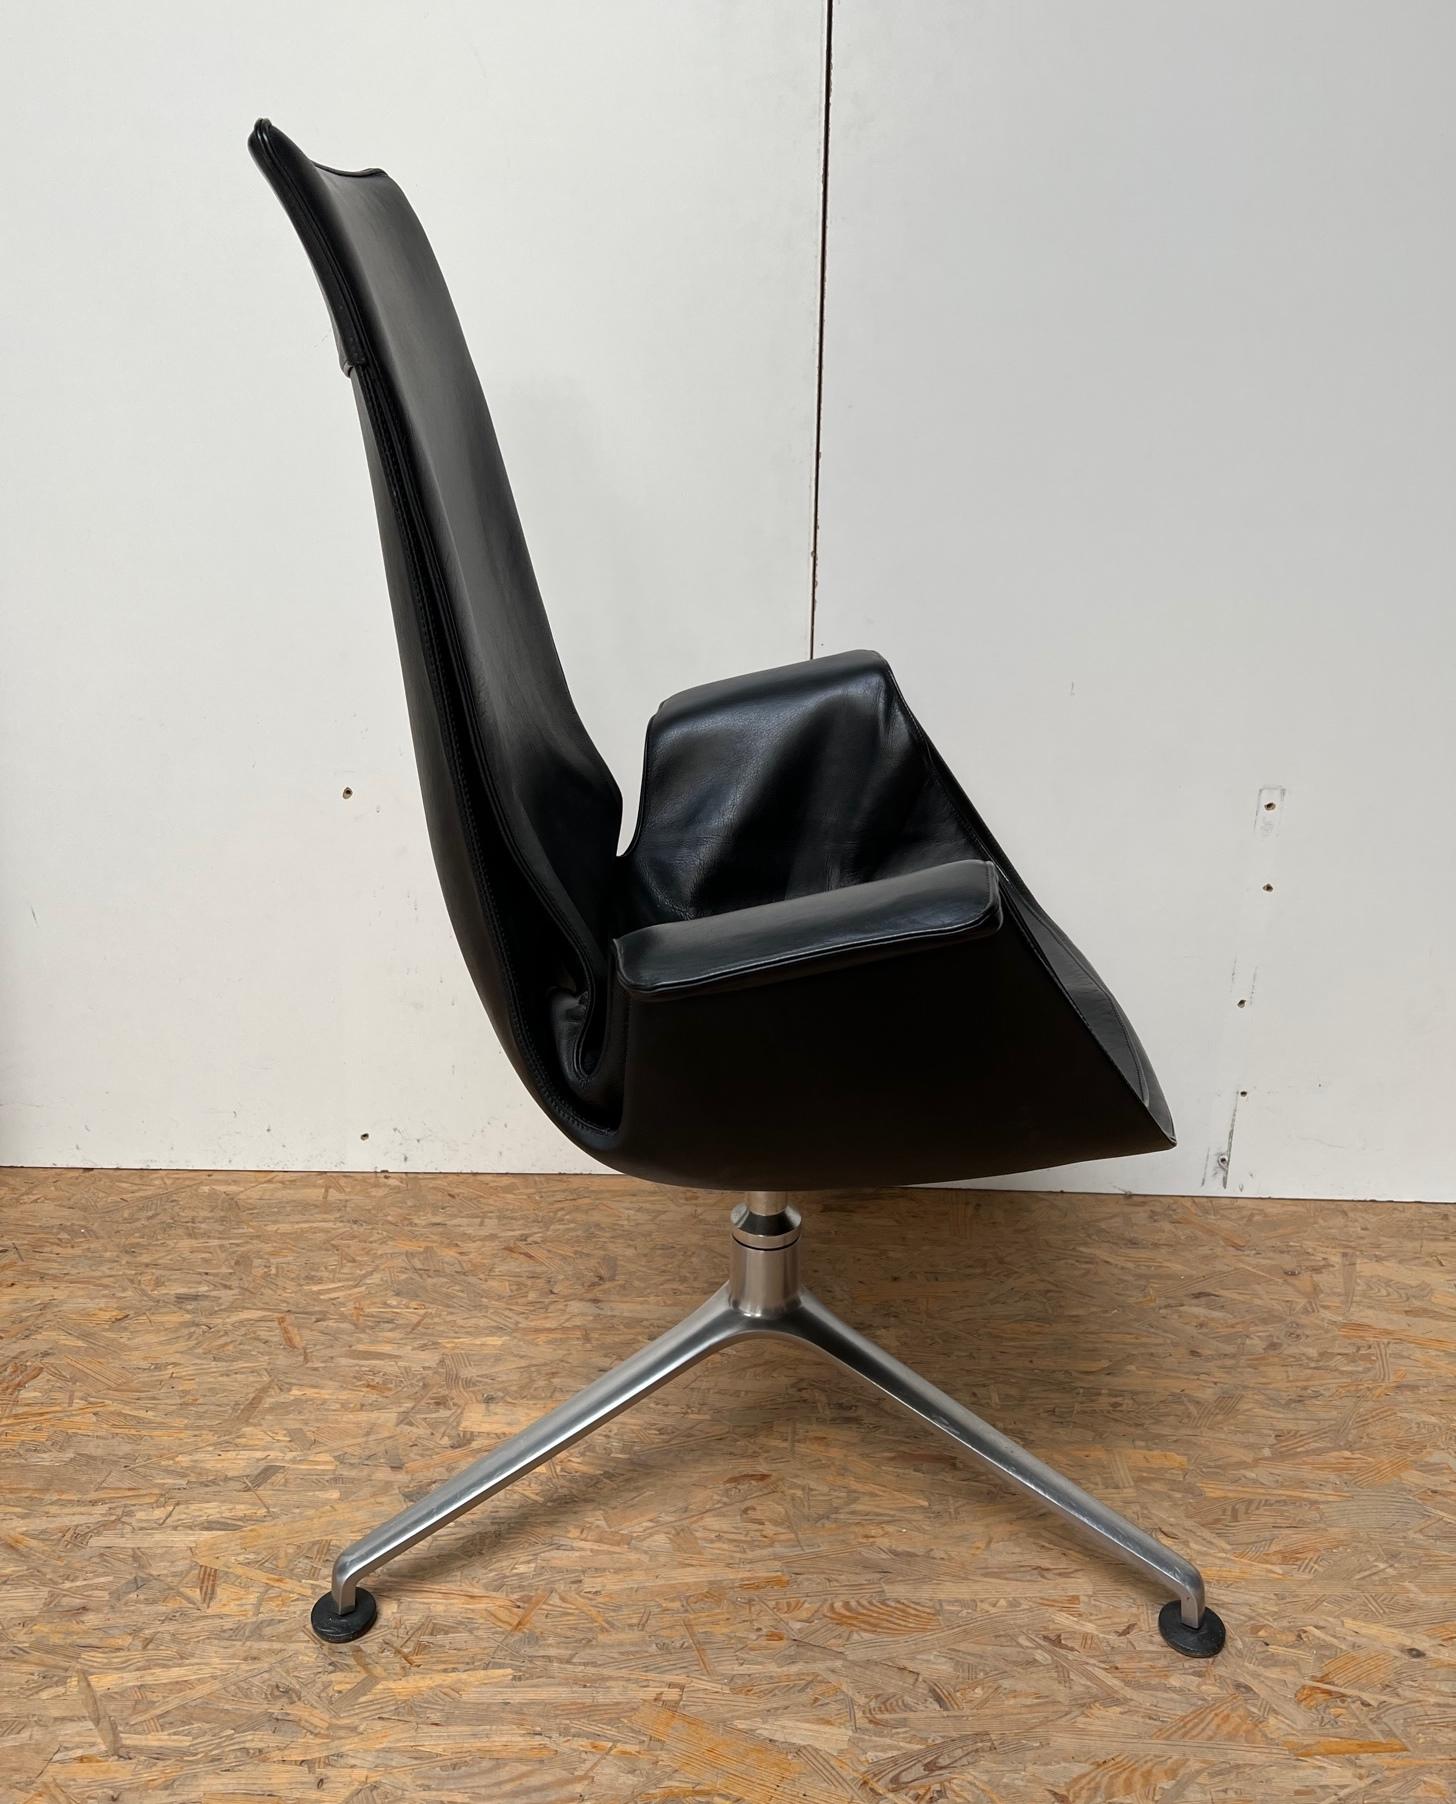 Ces premiers exemples de fauteuils de direction à haut dossier FK6725 ont été conçus par Jorgen Kastholm et Preben Fabricius au début des années 60 et produits par Kill International à la fin des années 60. La chaise dite 